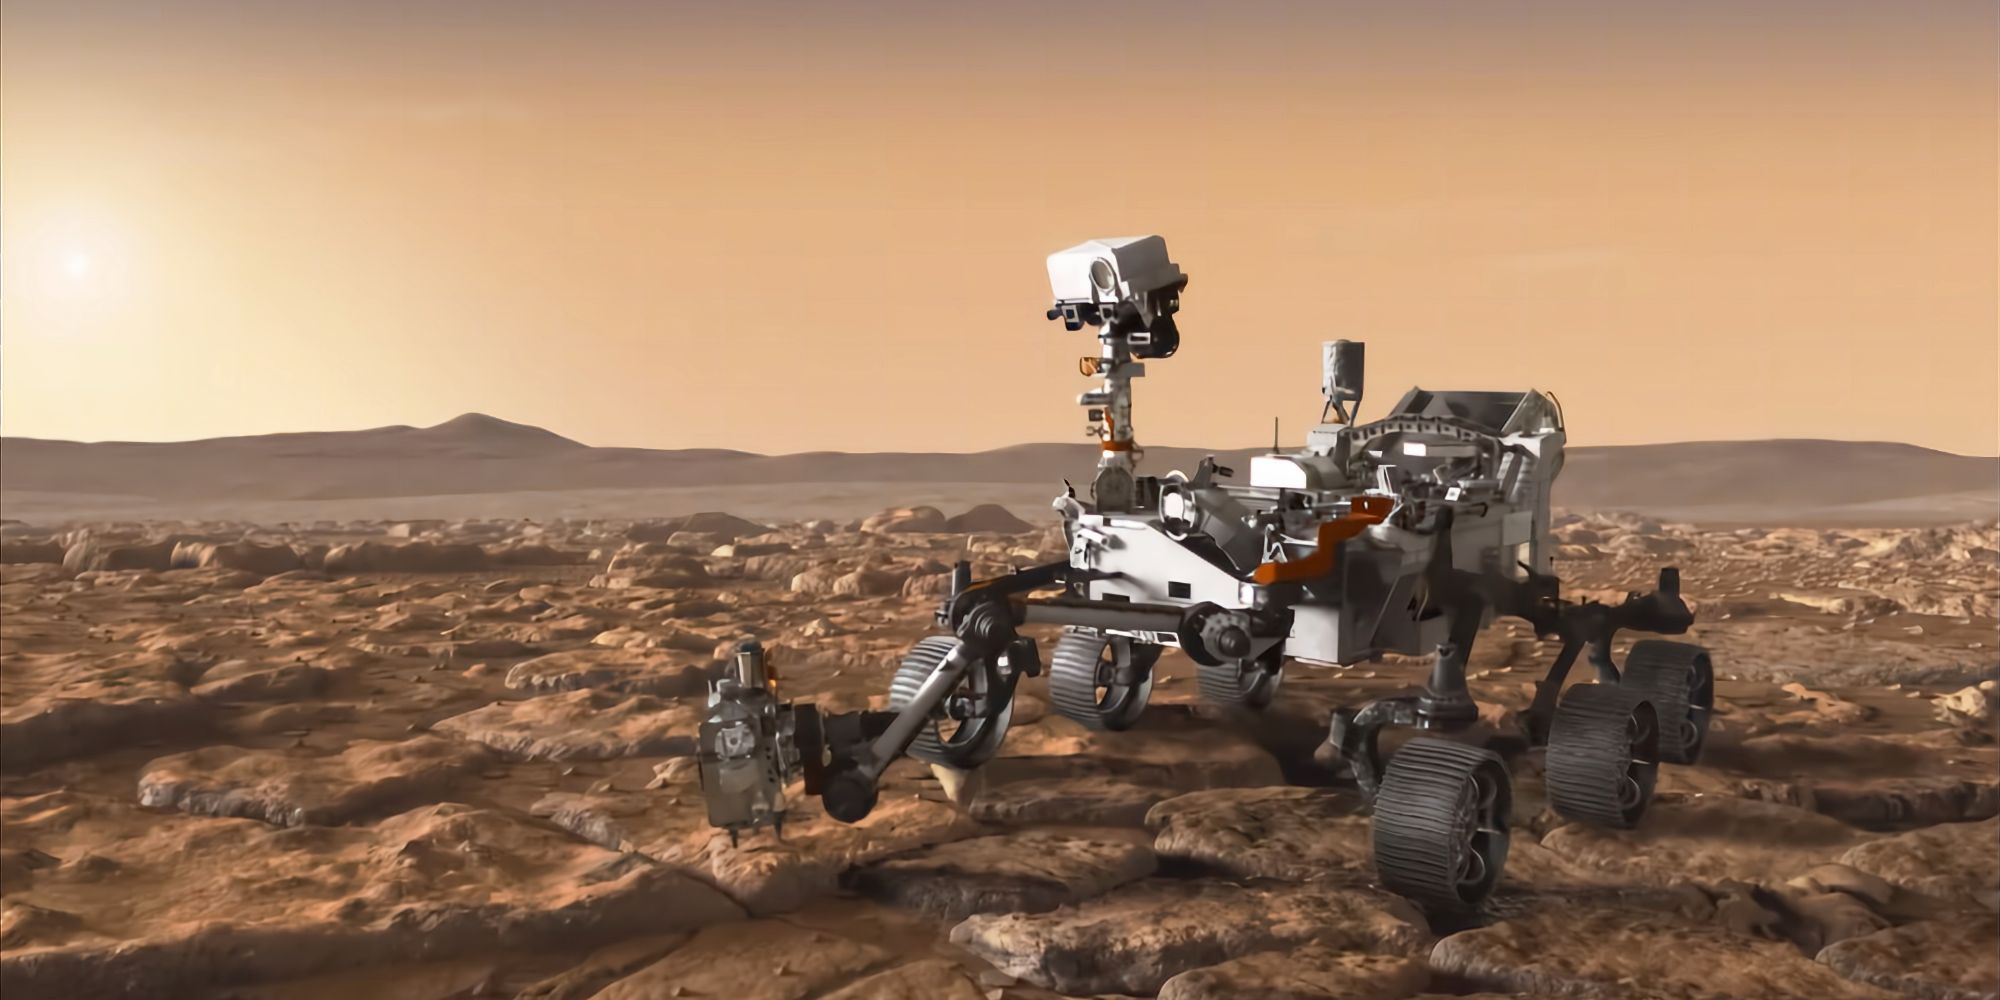 Conducir en Marte: ¿Qué tan rápido es el Perseverance Rover de la NASA?